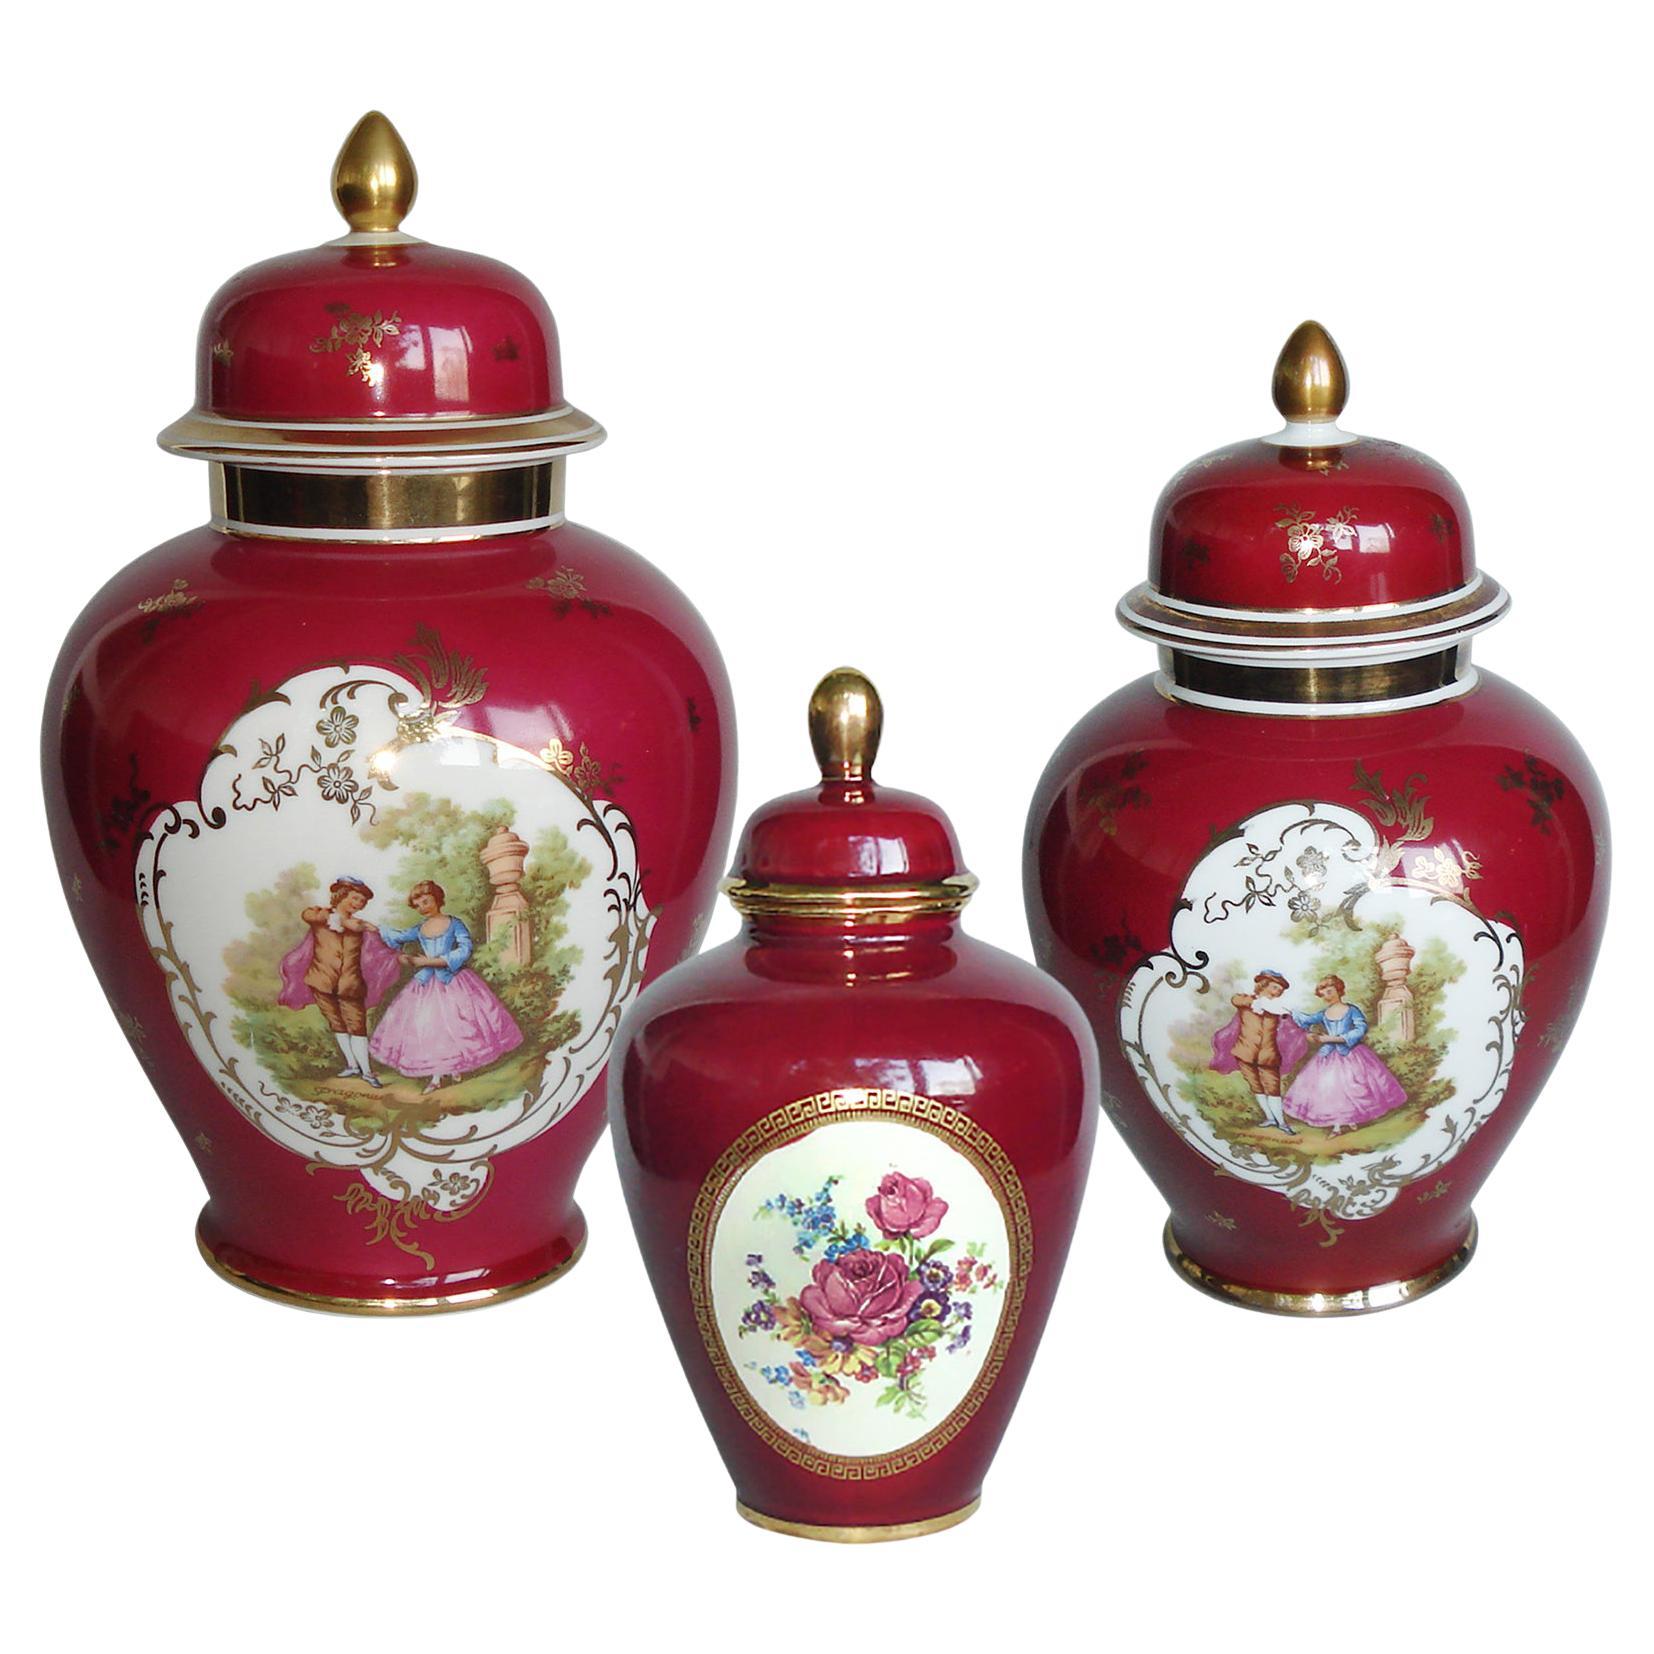 Ensemble de trois urnes en porcelaine avec couvercle, peintes à la main avec des scènes de ragonard en vente